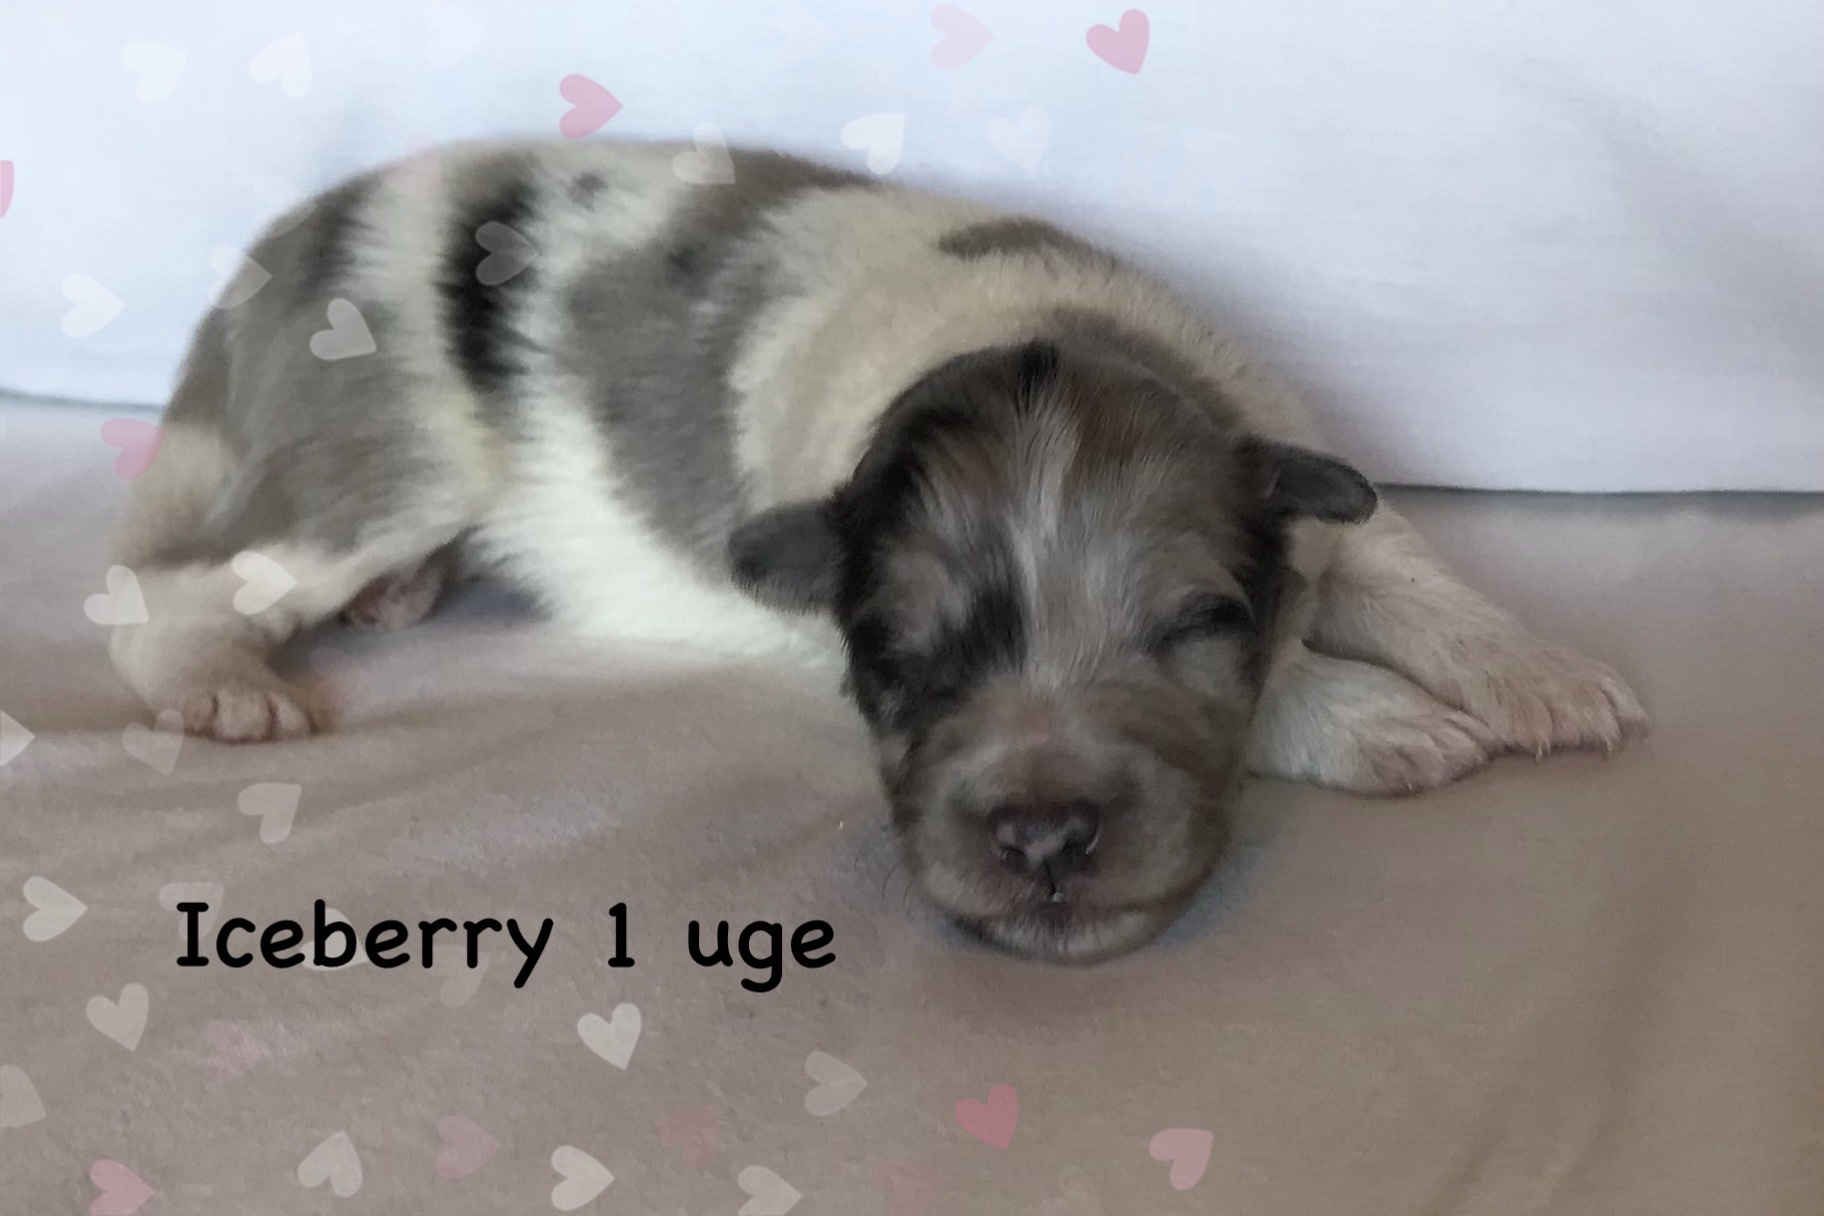 Iceberry har fået sit navn pga. hans hvide aftegninger.